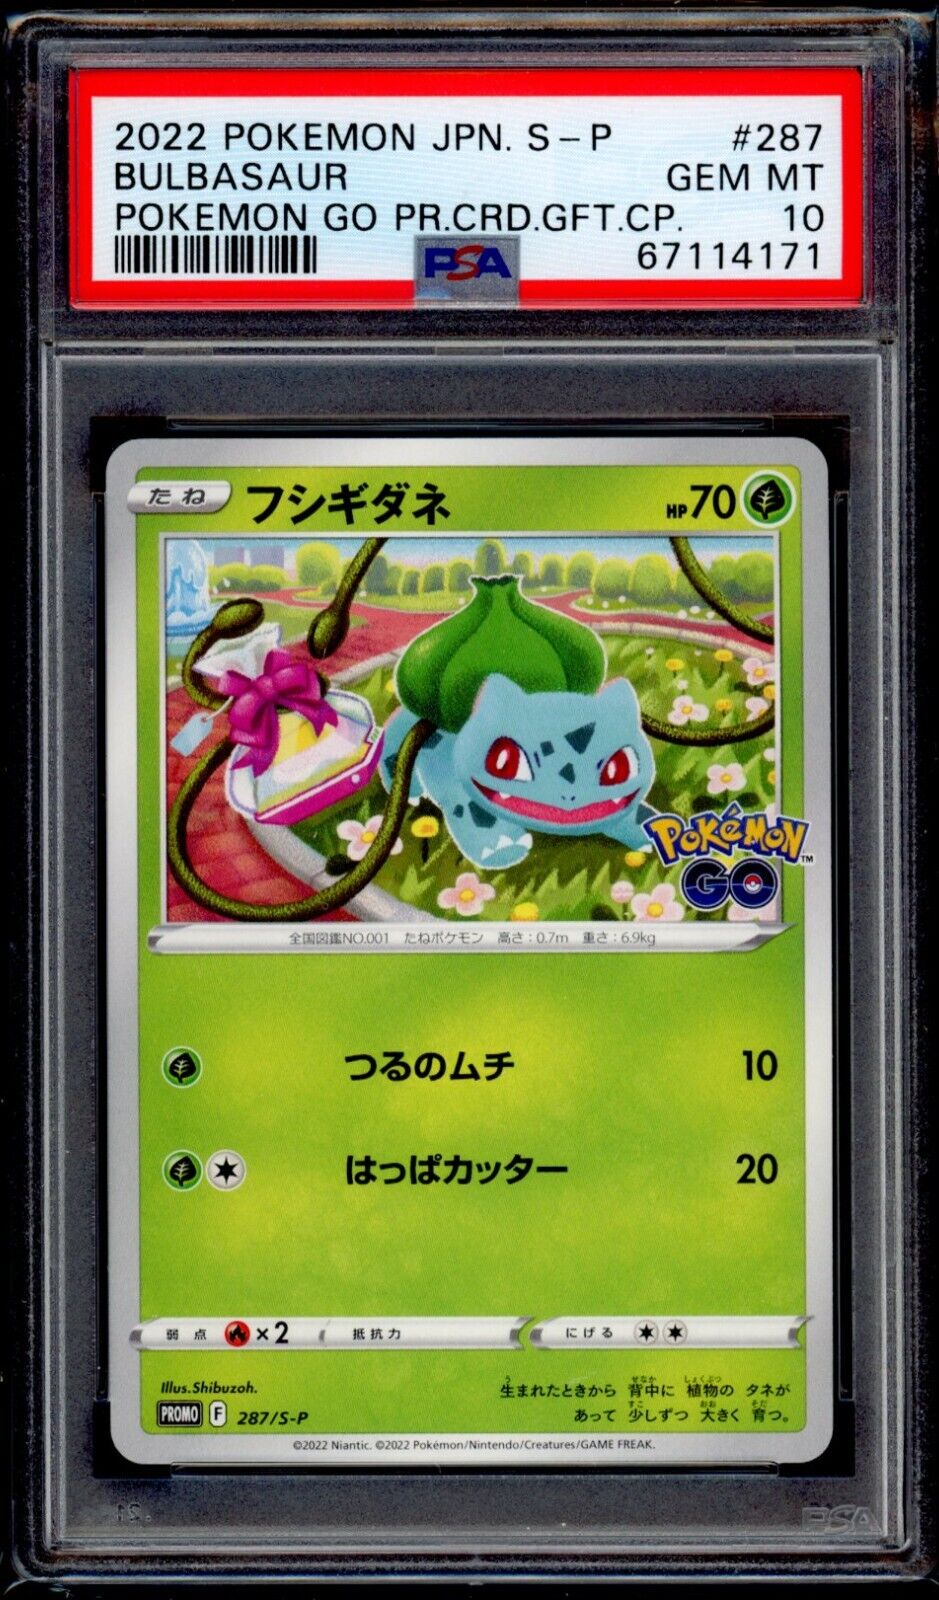 PSA 10 Bulbasaur 2022 Pokemon Card 287/S-P Pokemon Go Promo Japanese